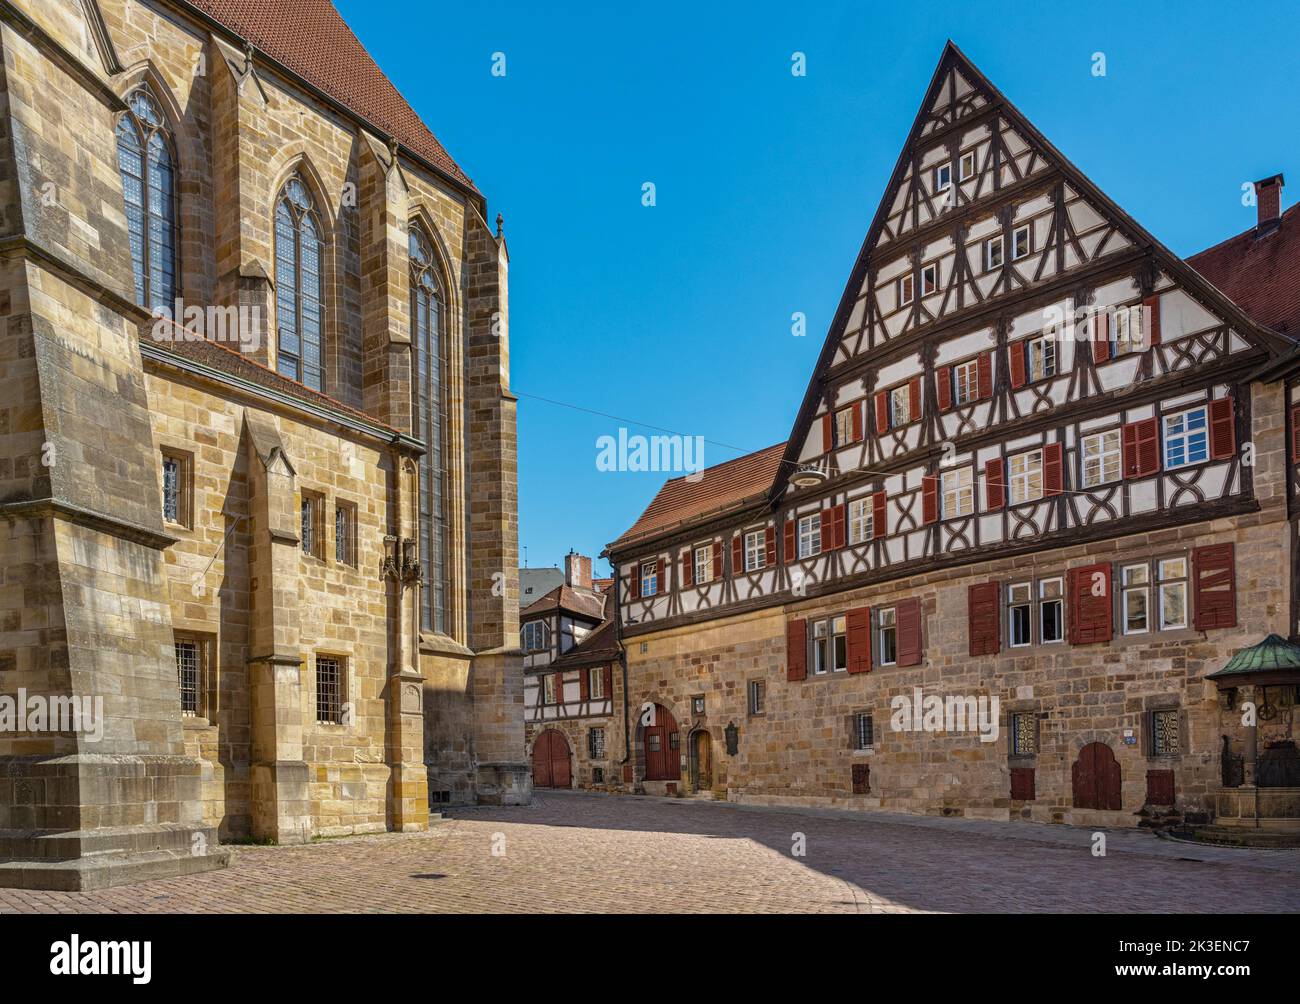 Vue sur l'ancienne fabrique de vins de Kessler dans la vieille ville historique d'Esslingen. Baden Wuerttemberg, Allemagne, Europe Banque D'Images